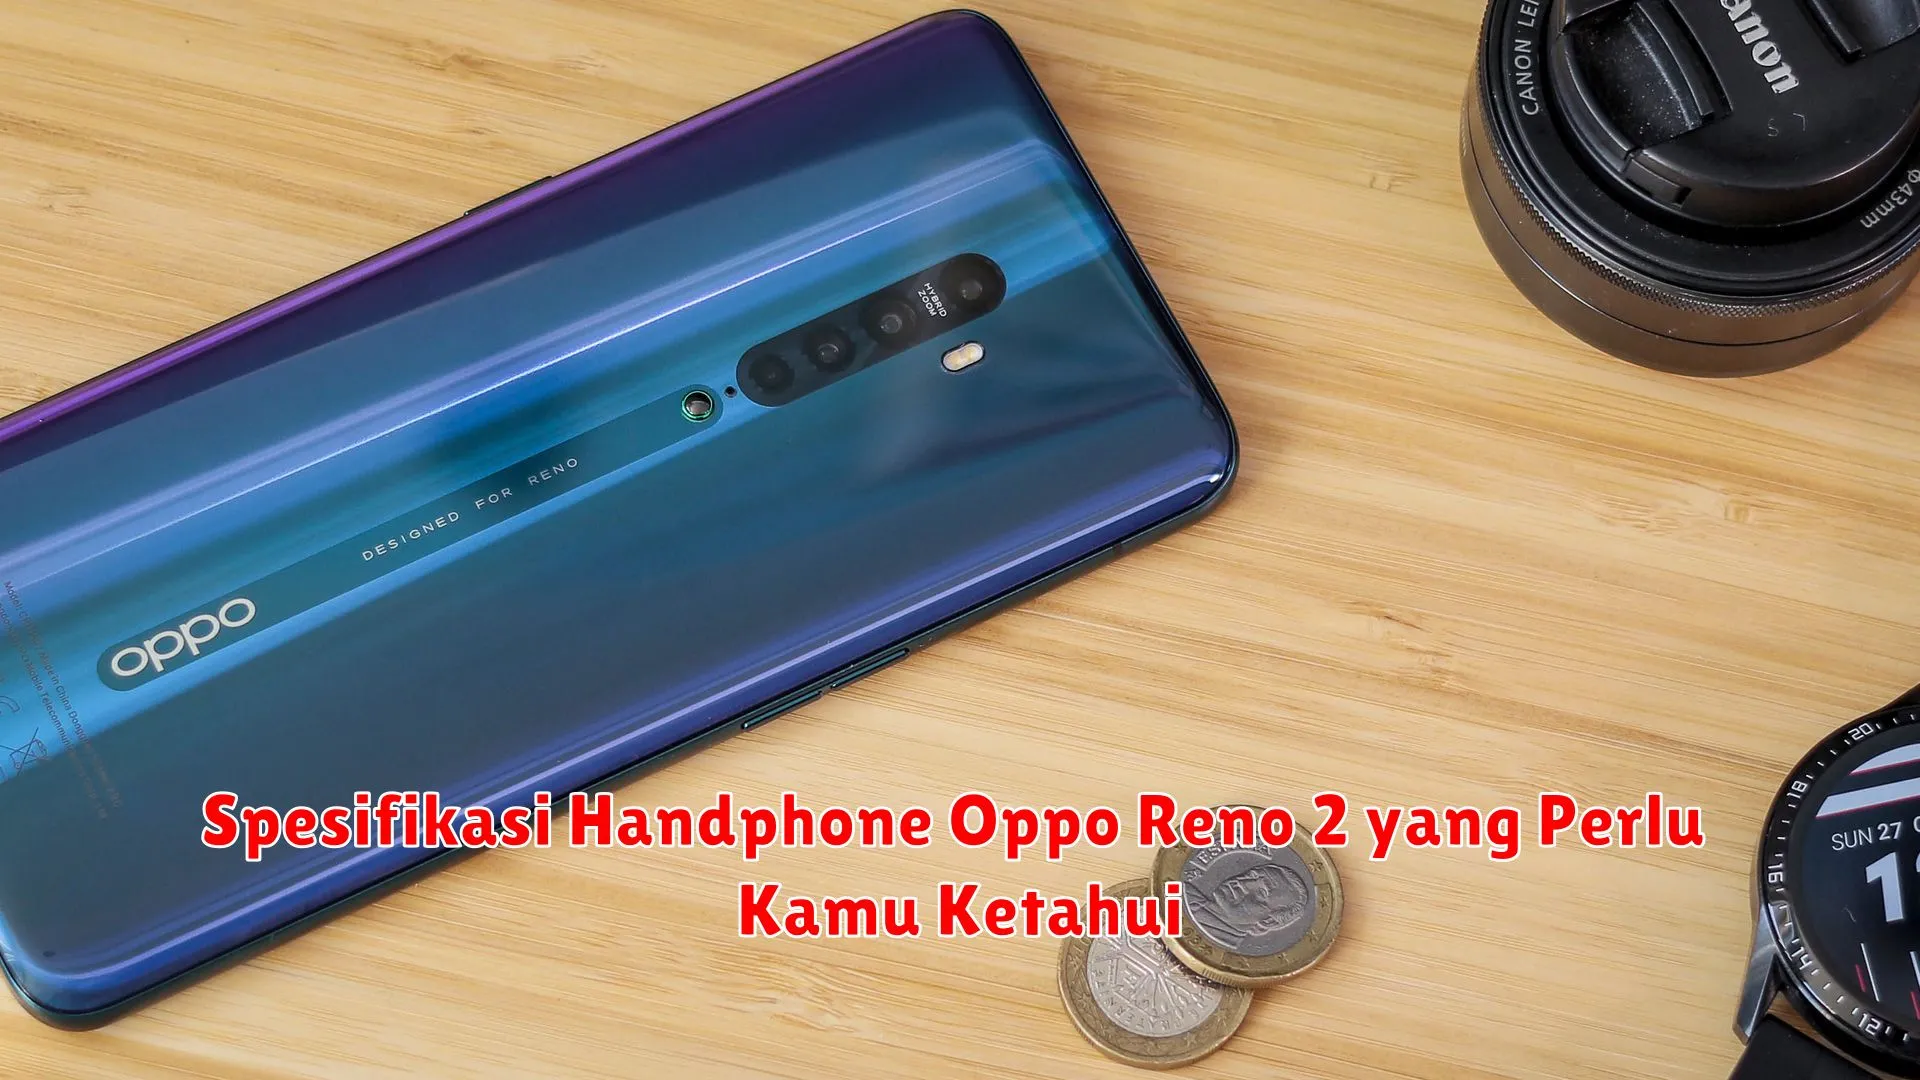 Spesifikasi Handphone Oppo Reno 2 yang Perlu Kamu Ketahui